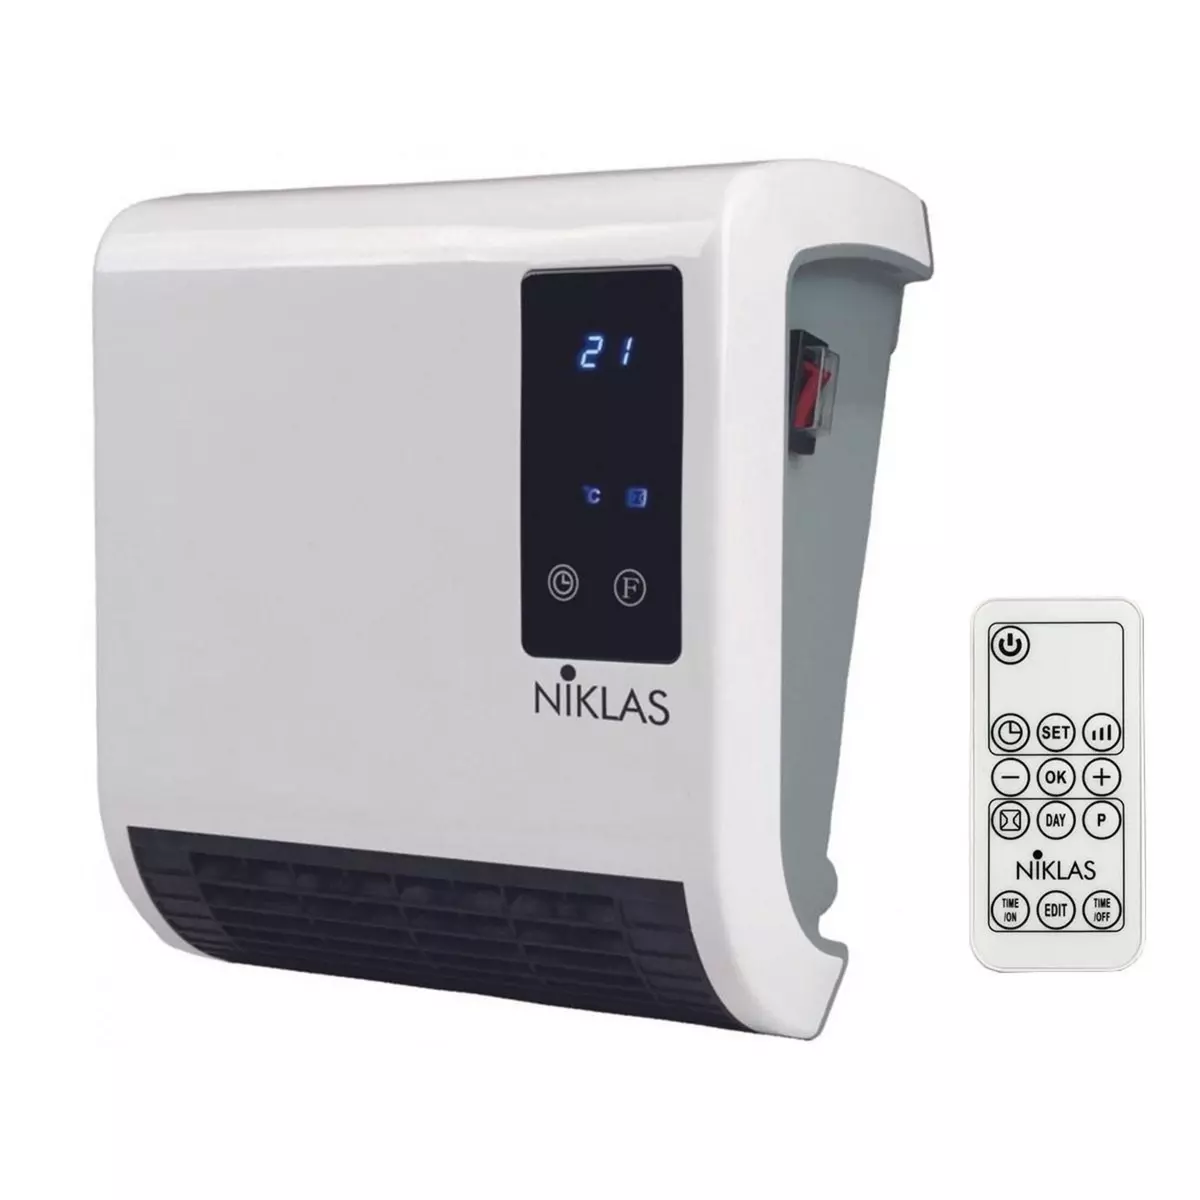 NIKLAS Chauffage soufflant 2000W Trendy Numérique Programmable Télécommande 2 puissances Chauffe jusqu'à 20 m2 IP22 NIKLAS